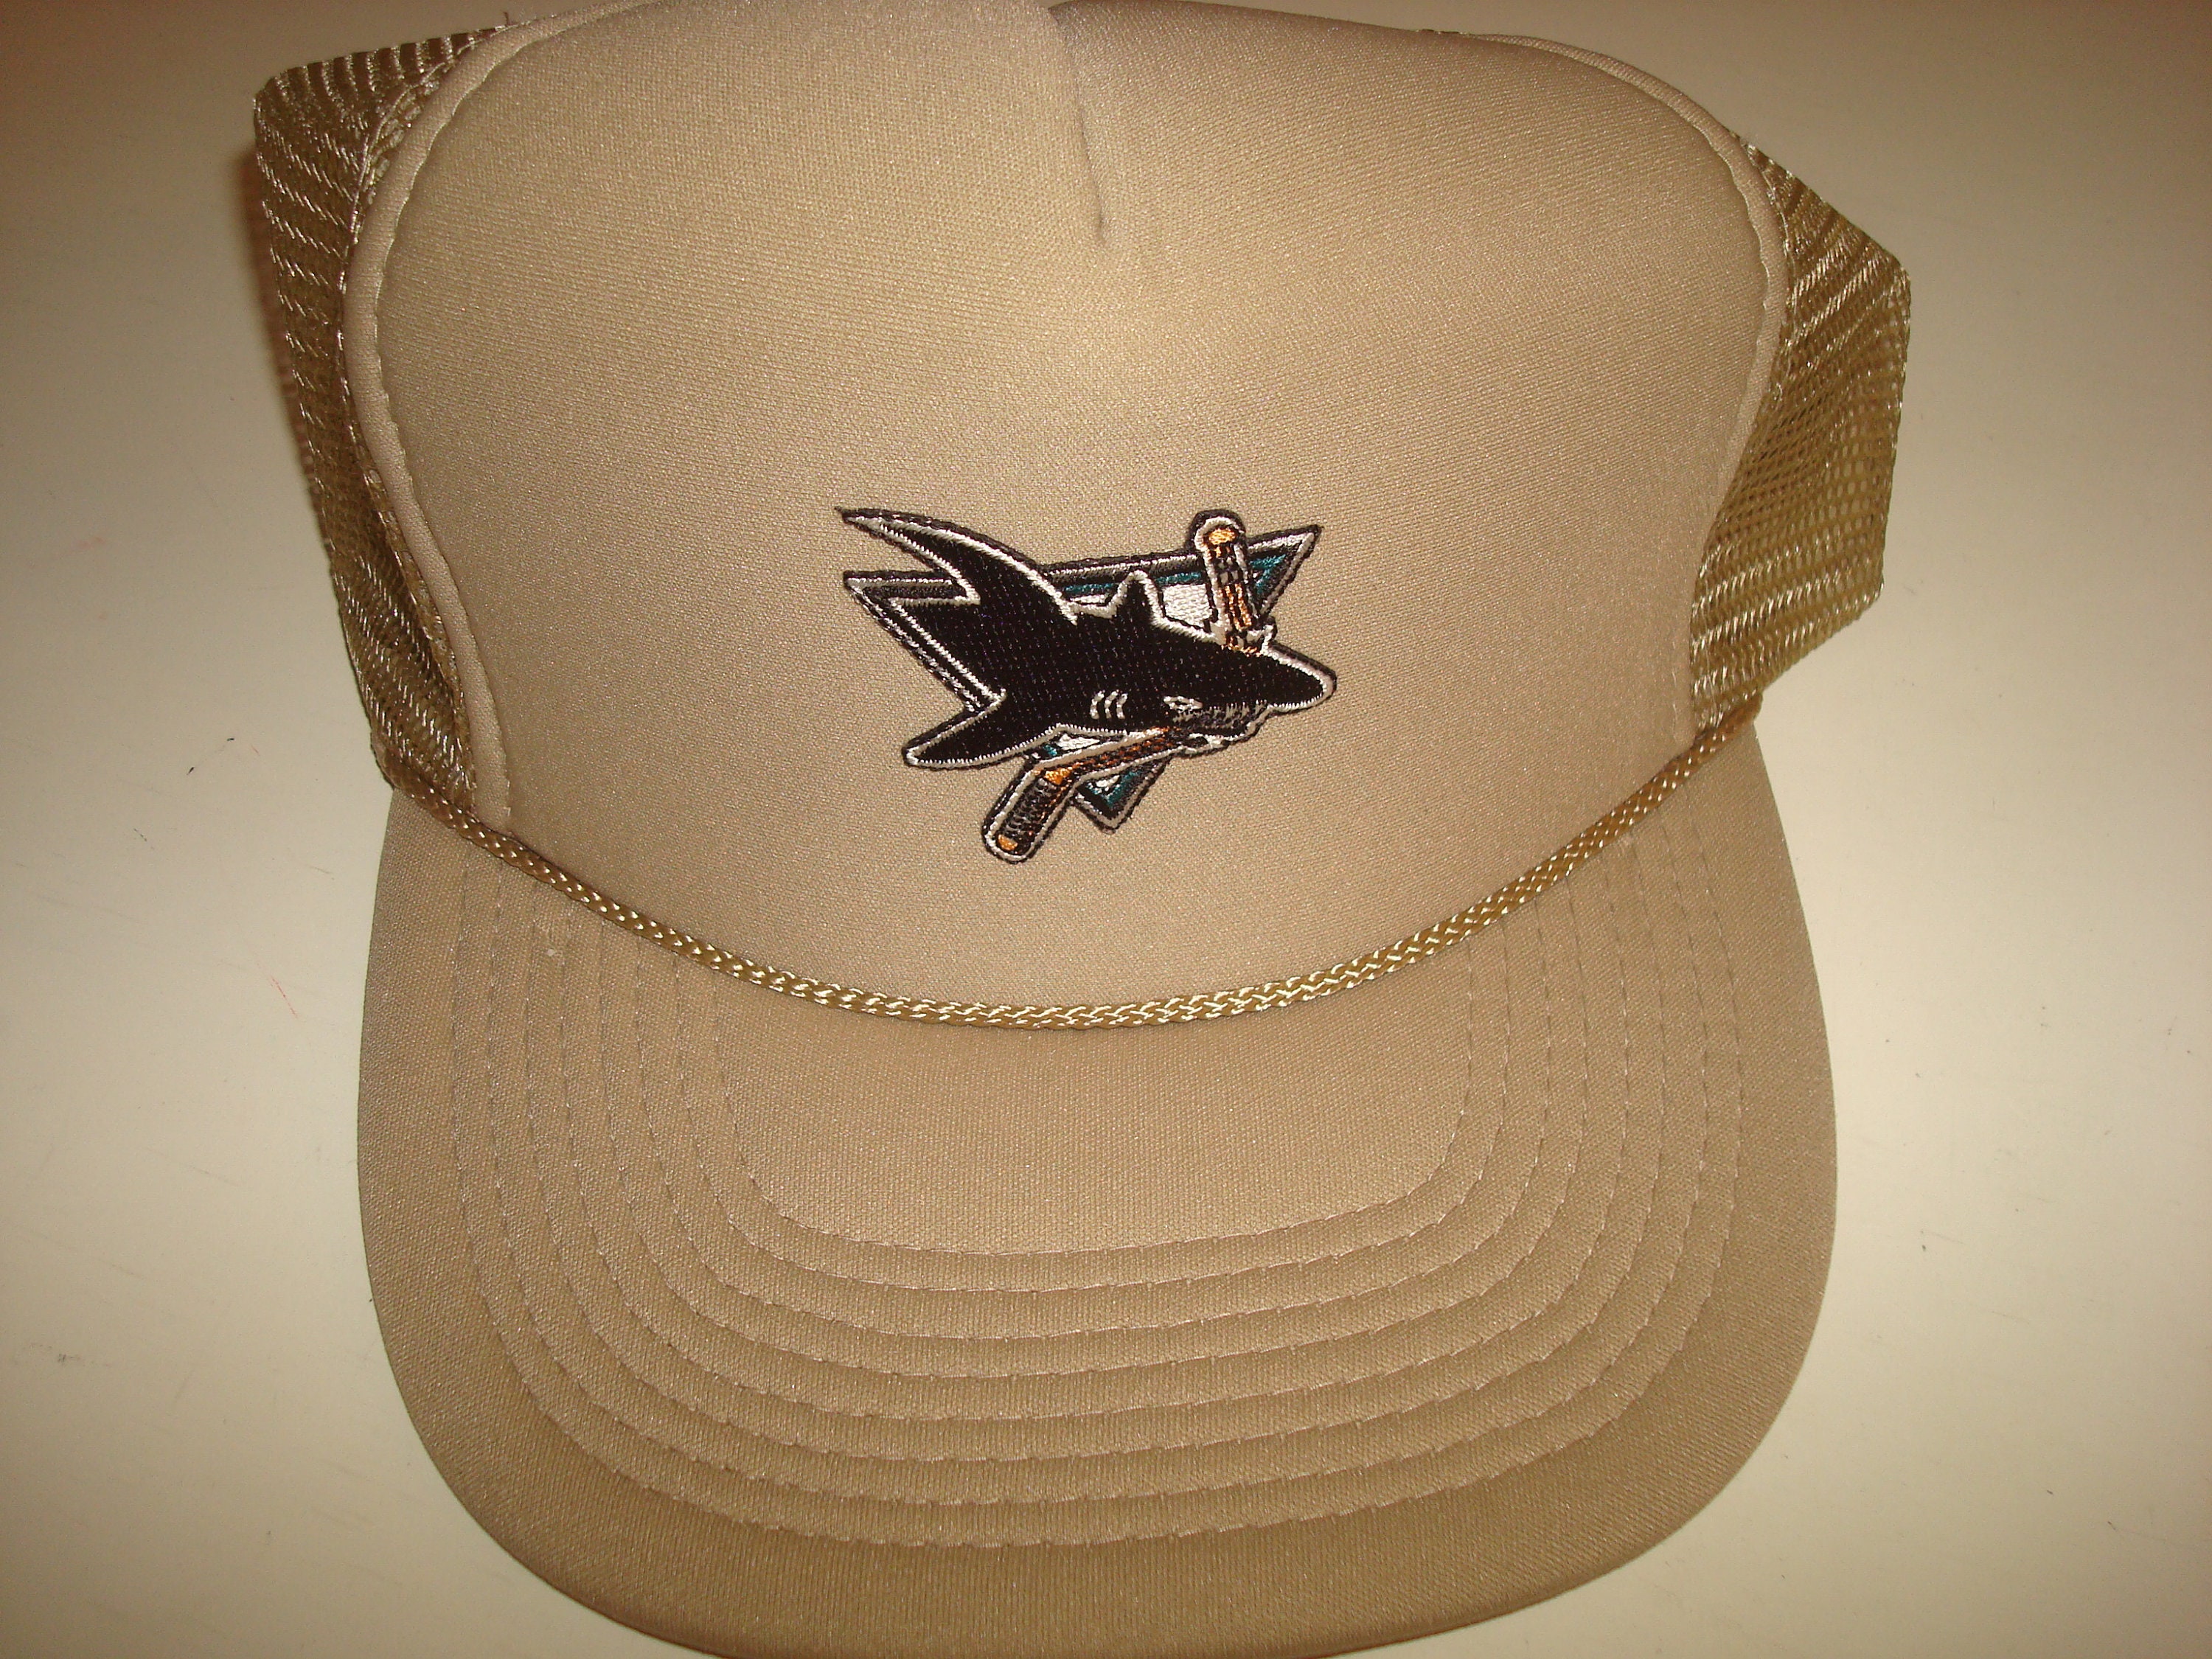 San Jose Sharks NHL Vintage Off-White Snapback Hat